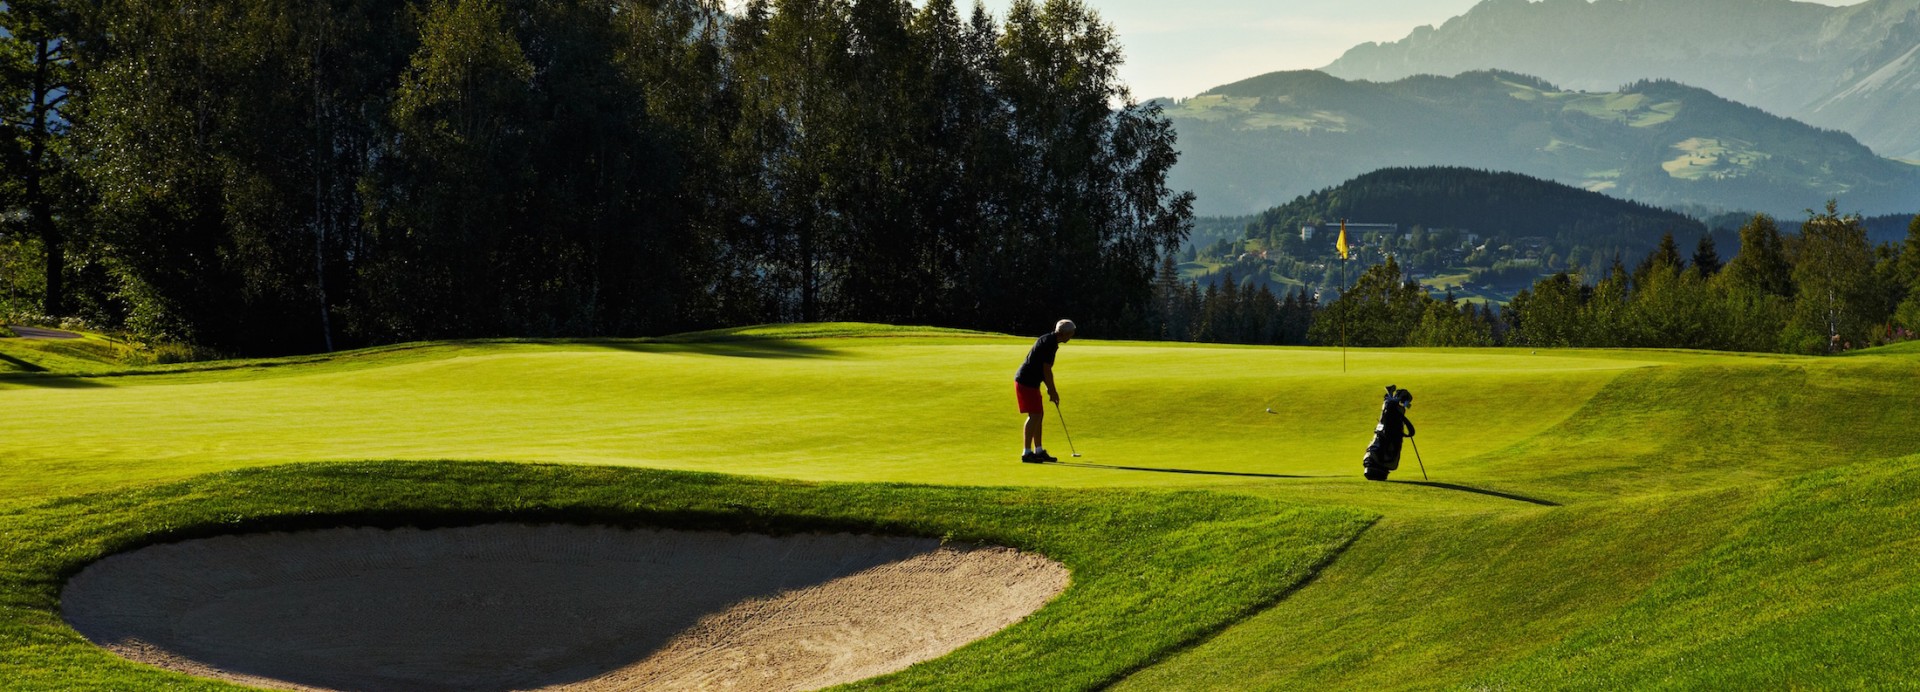 Golf Eichenheim  | Golfové zájezdy, golfová dovolená, luxusní golf